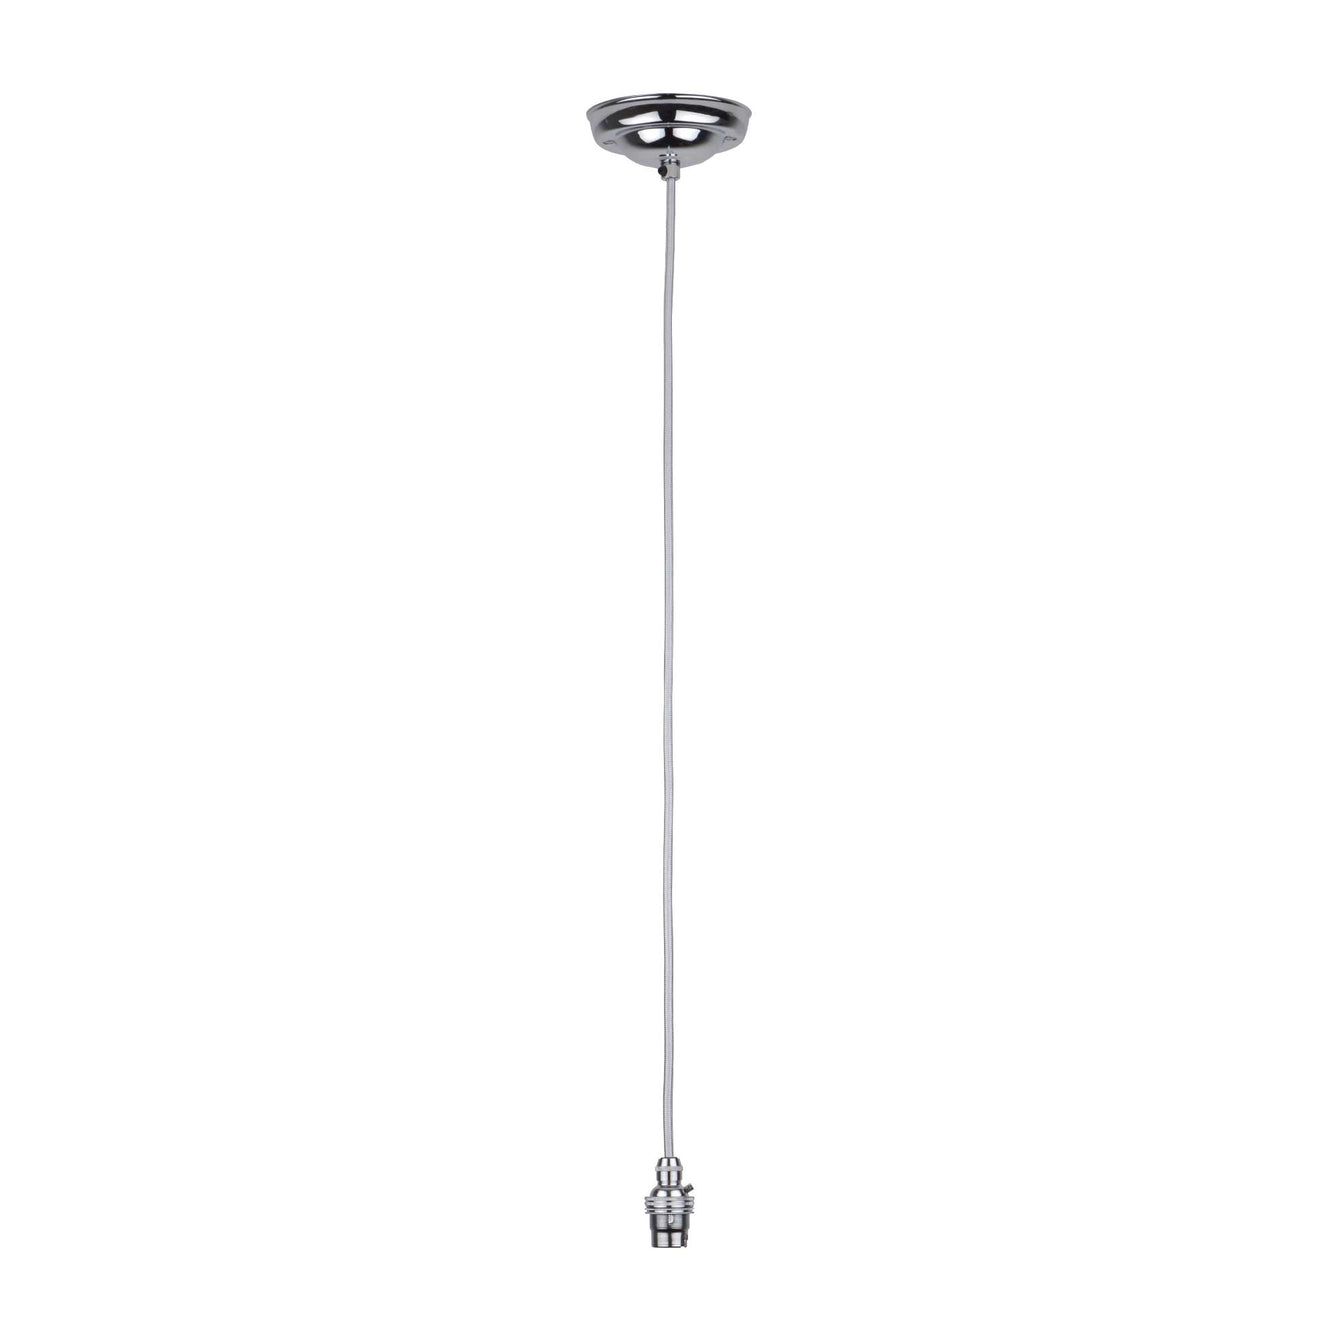 ElekTek Premium Pendant Light Kit DIY 108mm Ceiling Rose Round Flex and Lamp Holder B22 Cord Grip - Buy It Better 